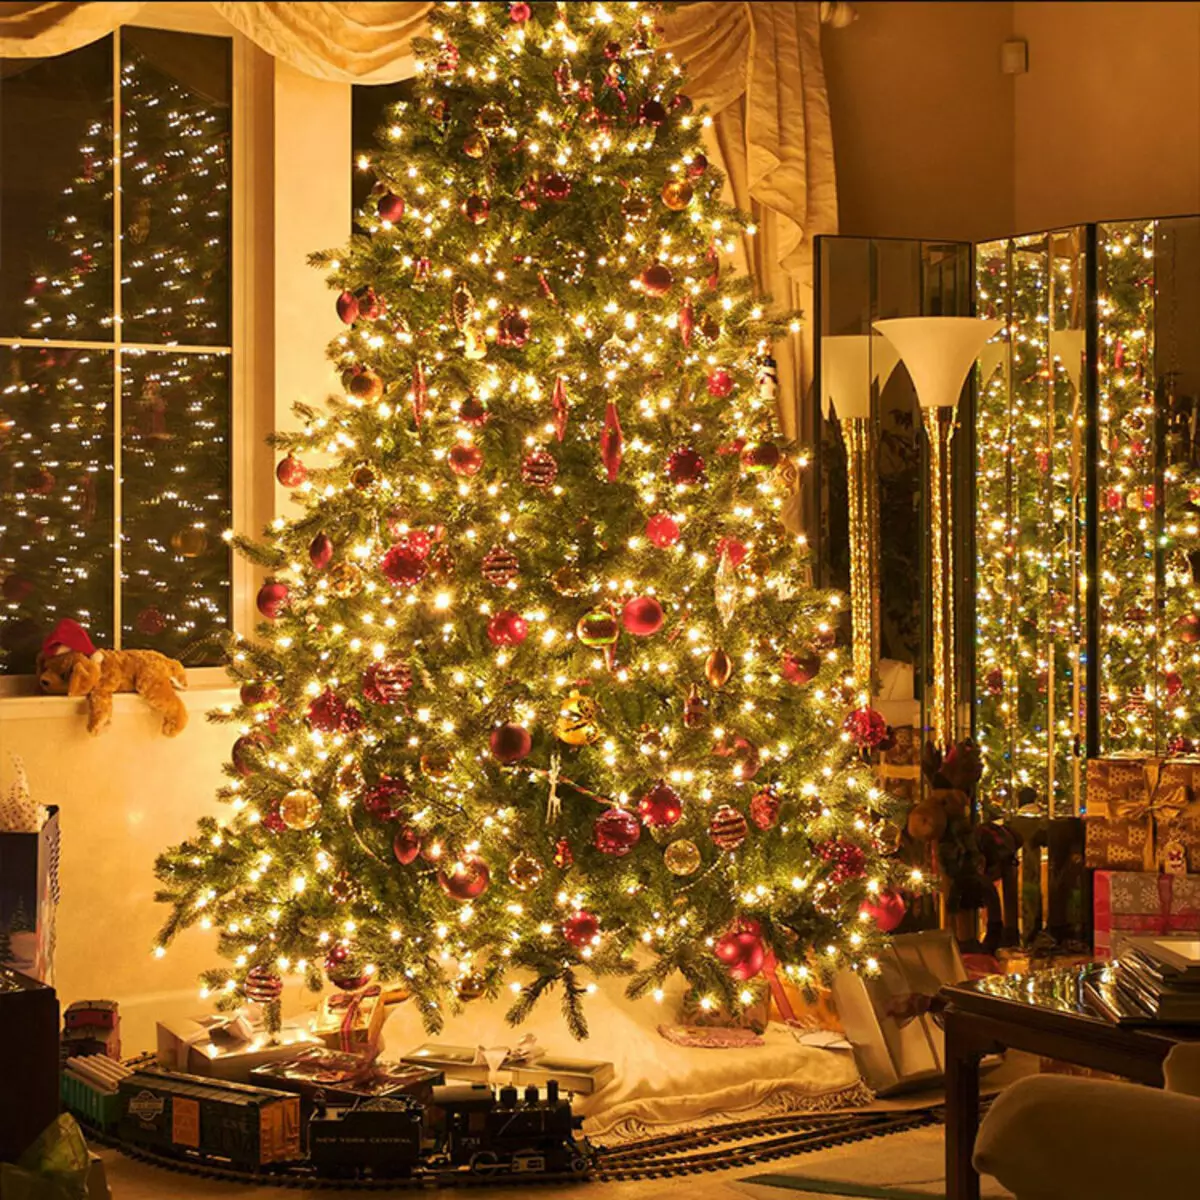 Ako zdobí vianočný strom s vencom? Ako správne a krásne obliekať to podľa schémy s žiariace elektrickej girlandami a ďalšie veniec? 7630_3